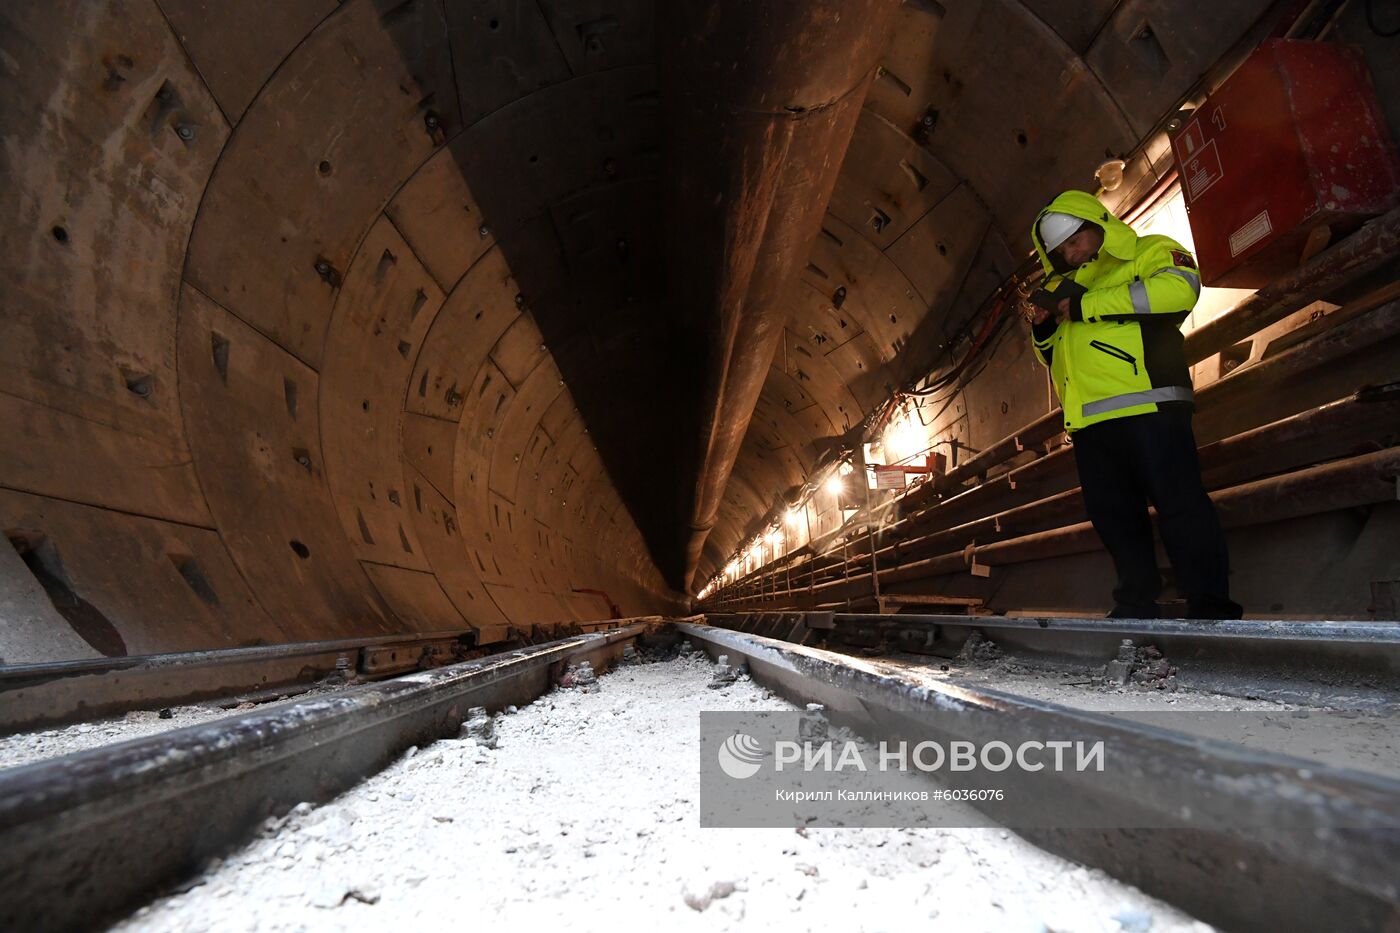 Строительство станции "Ржевская" Большой кольцевой линии метро